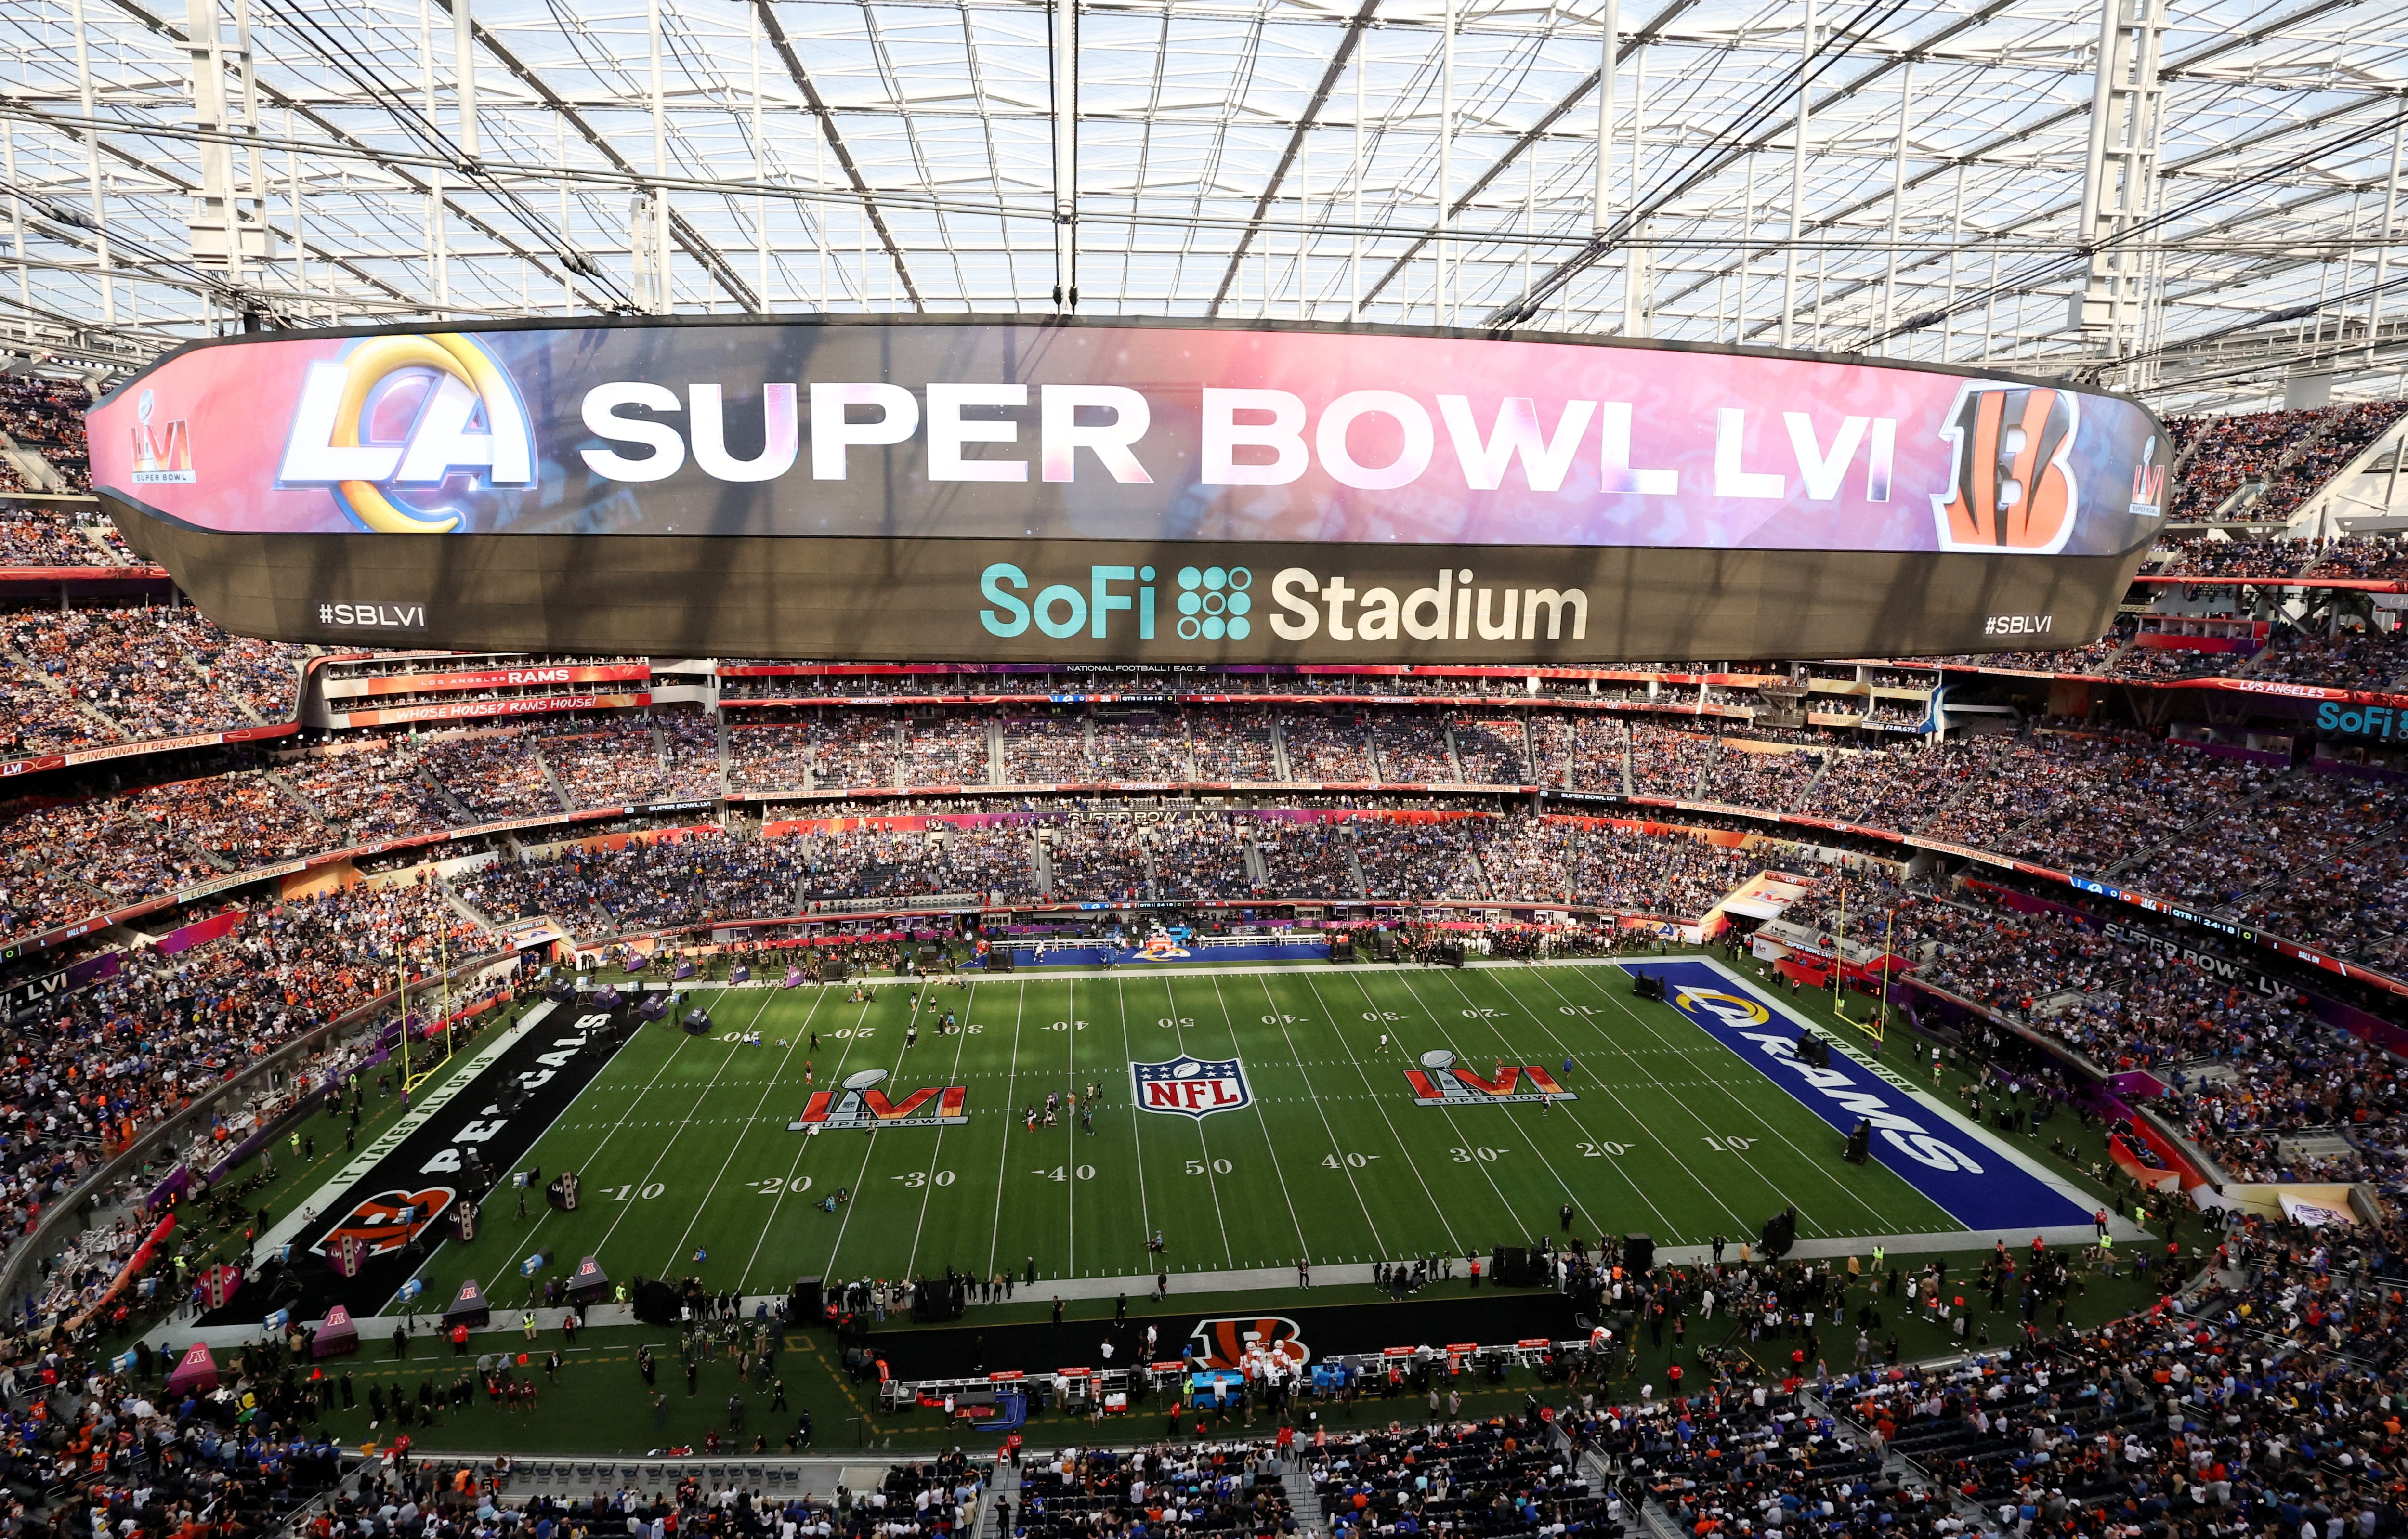 SoFi Stadium fue escenario del Super Bowl LVI y también estará en el Mundial de fútbol 2026.